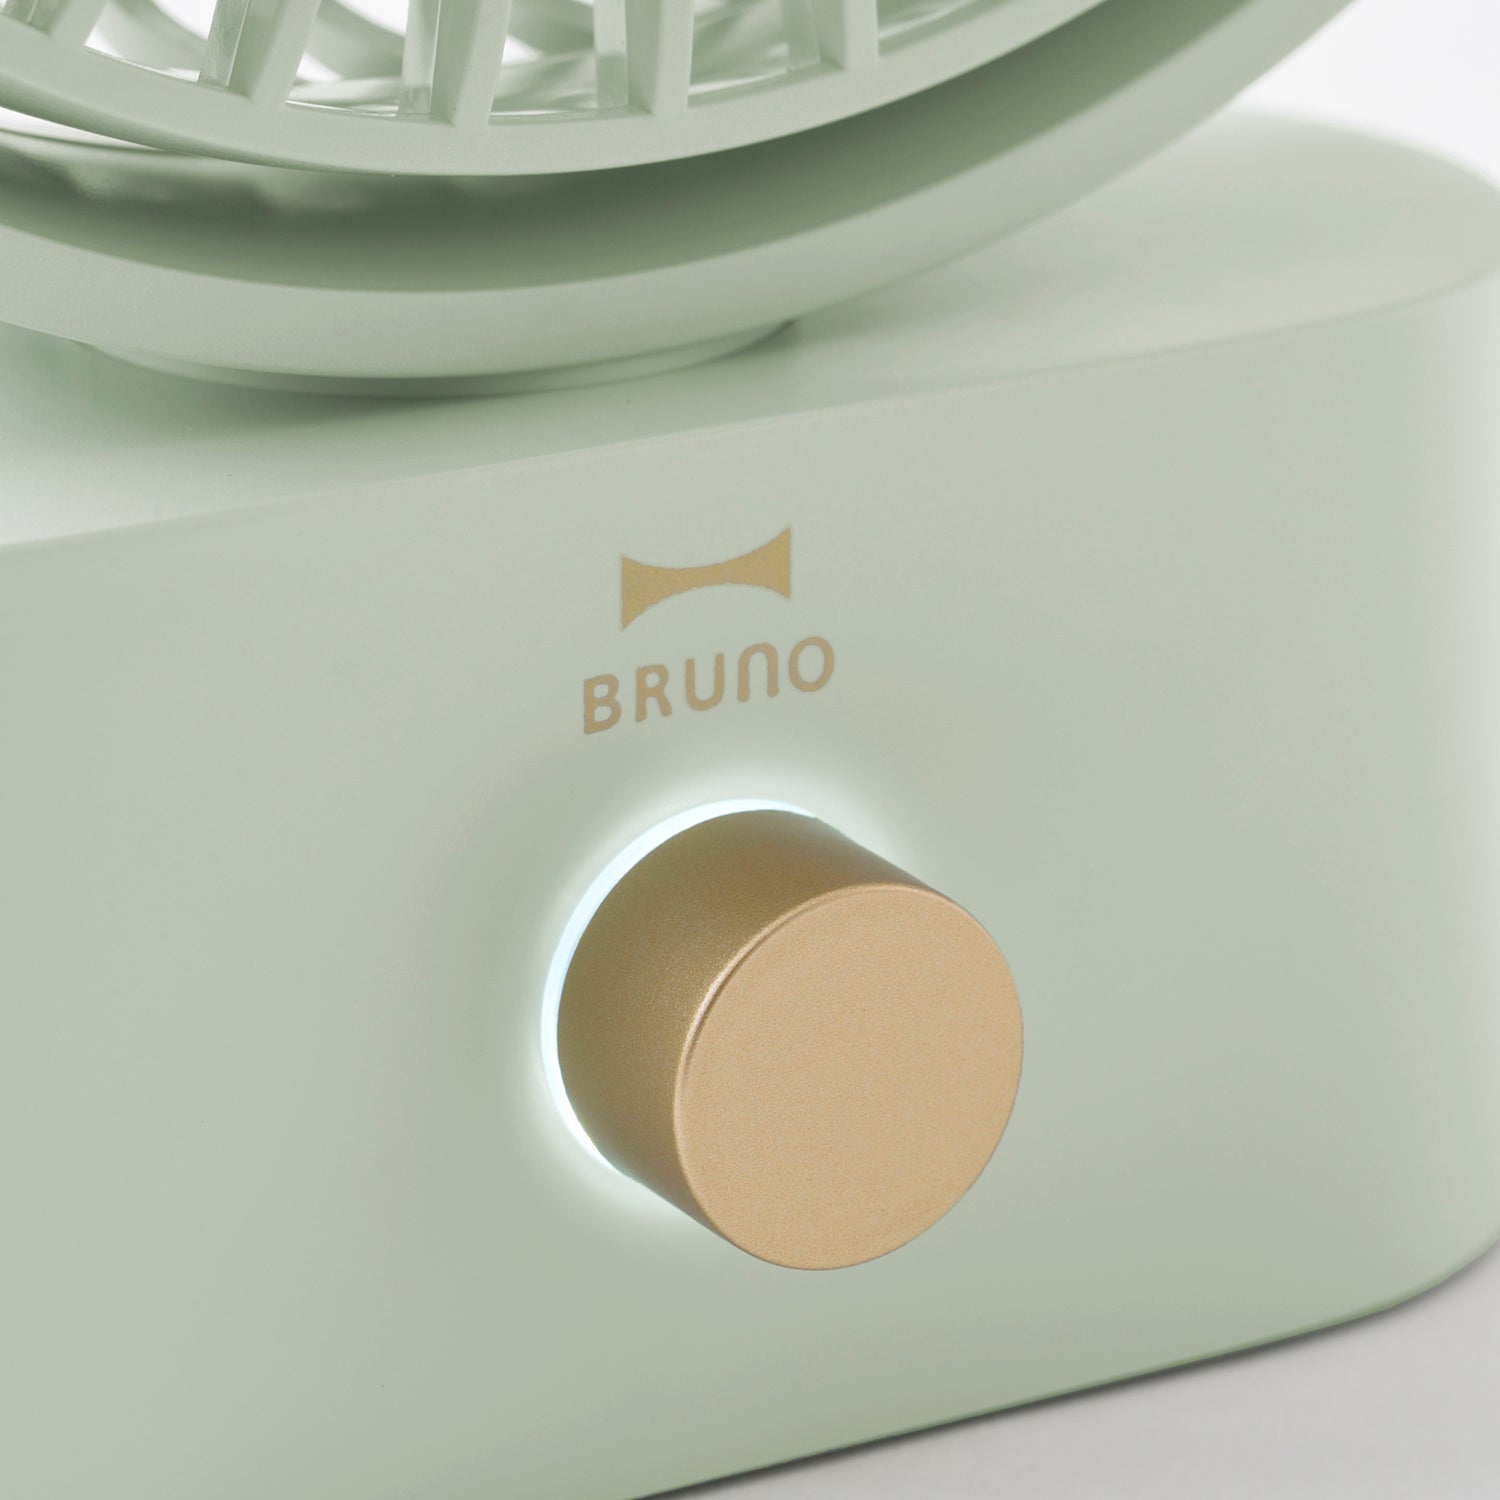 BRUNO Portable Swing Desk Fan - Green BDE061-GR